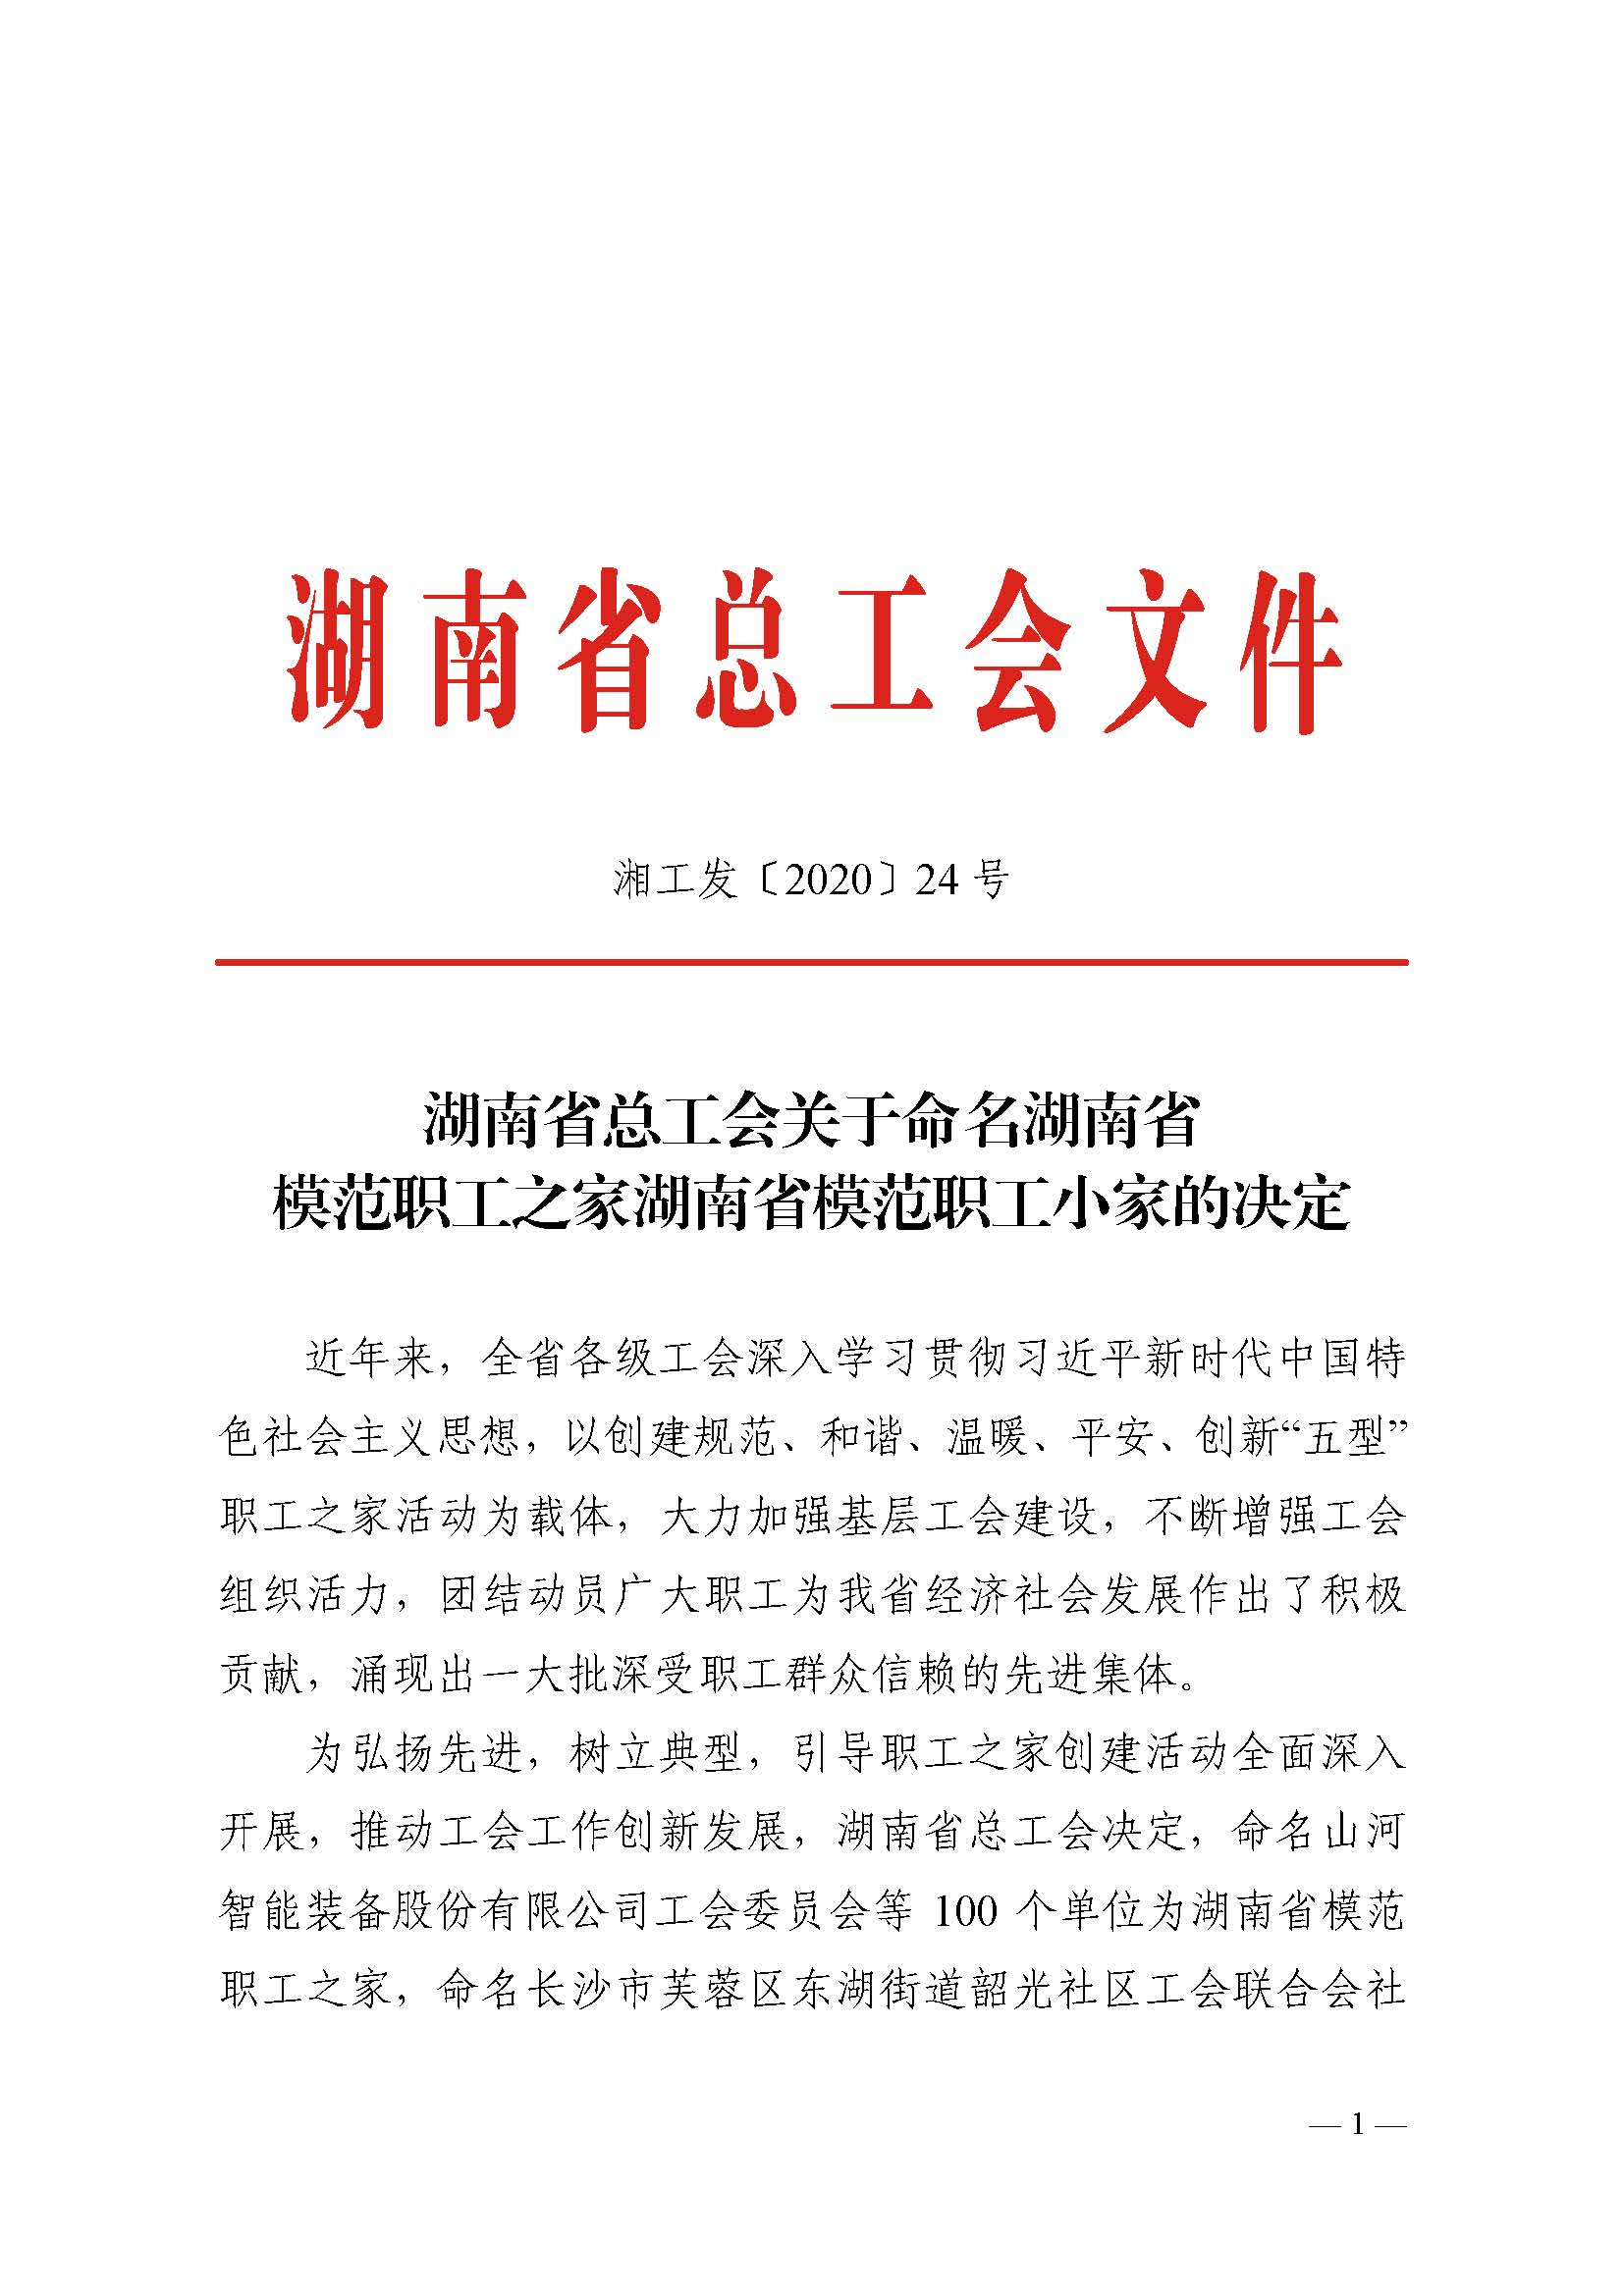 投资公司长沙管廊项目工会小组获湖南省 模范职工小家 称号